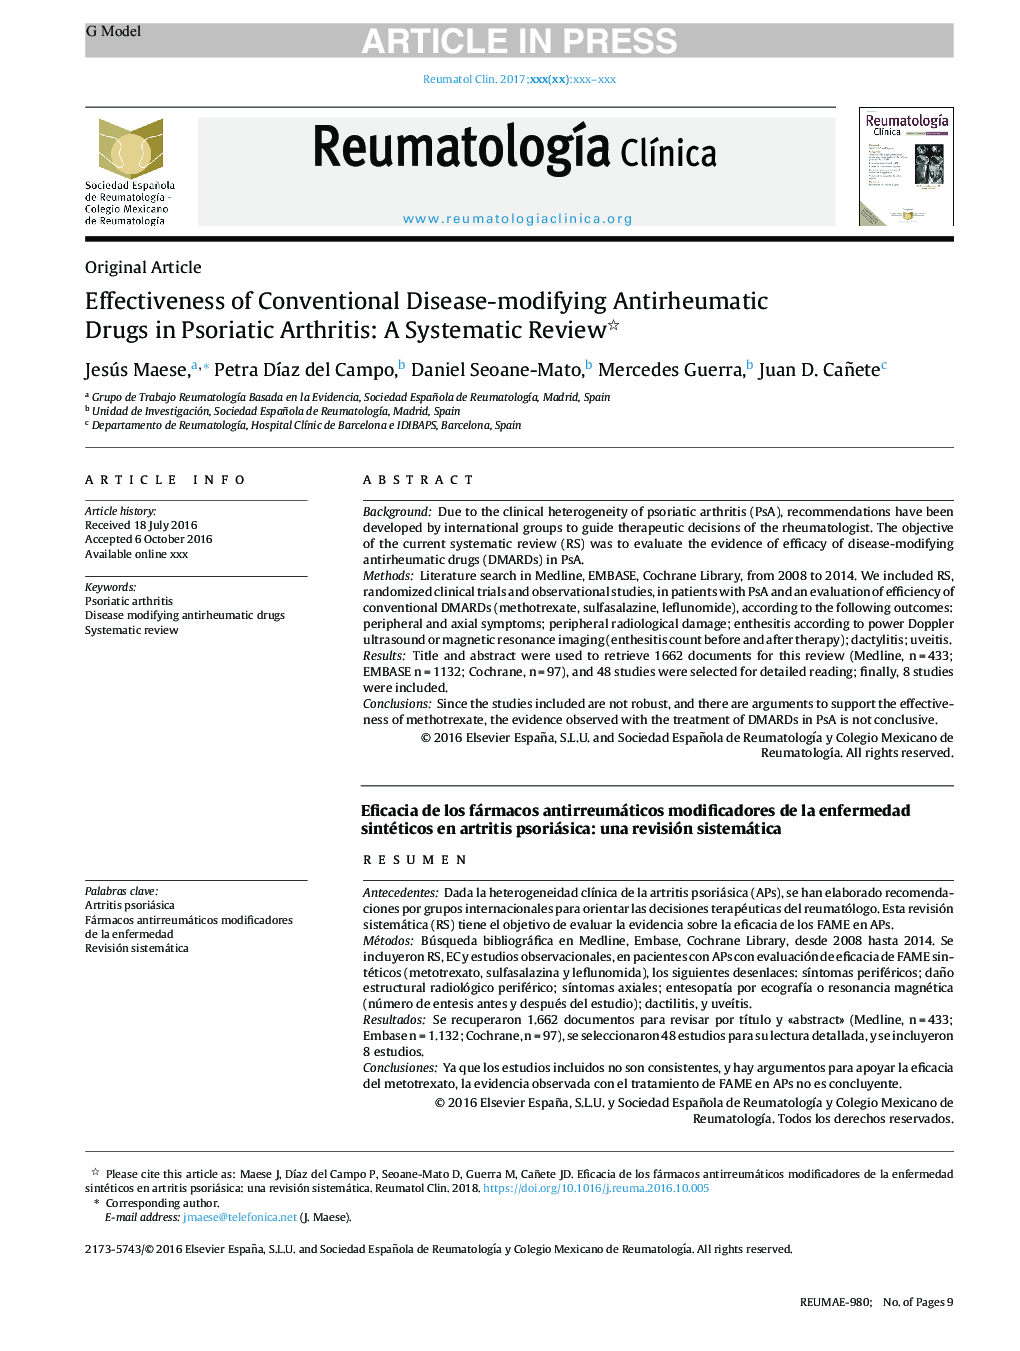 اثربخشی داروهای ضدویروسی متعارف در درمان آرتریت روماتوئید: یک بررسی منظم 